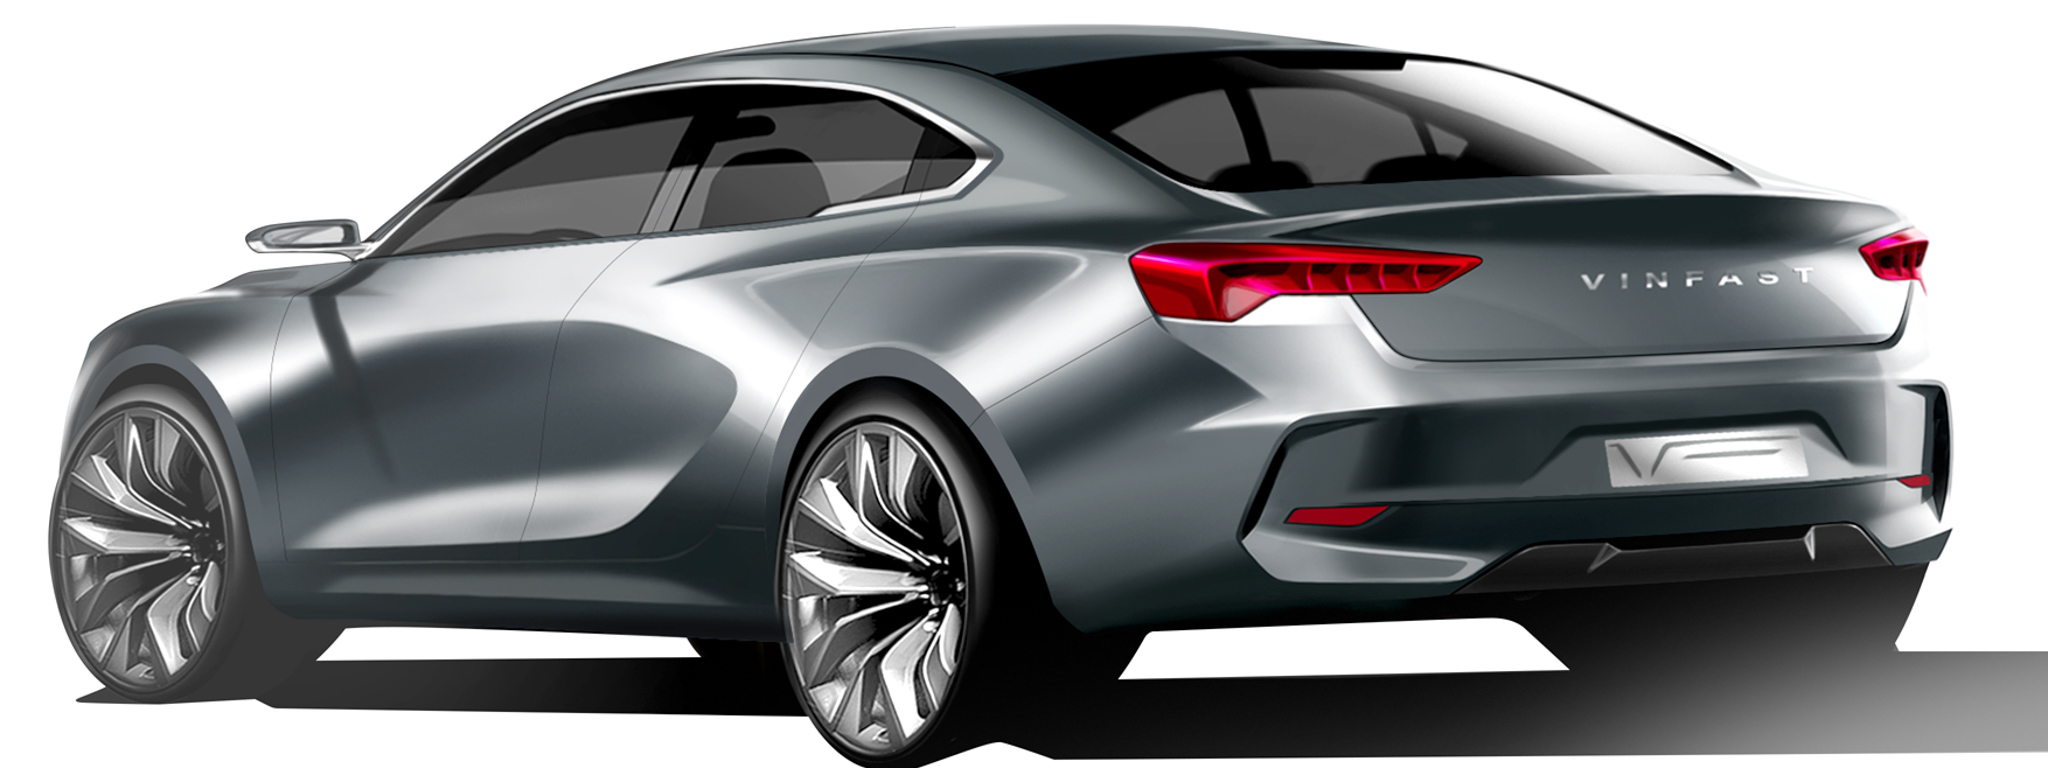 VINFAST công bố 20 mẫu thiết kế xe ô tô, sedan và SUV, cho bình chọn, giải nhất 500 triệu